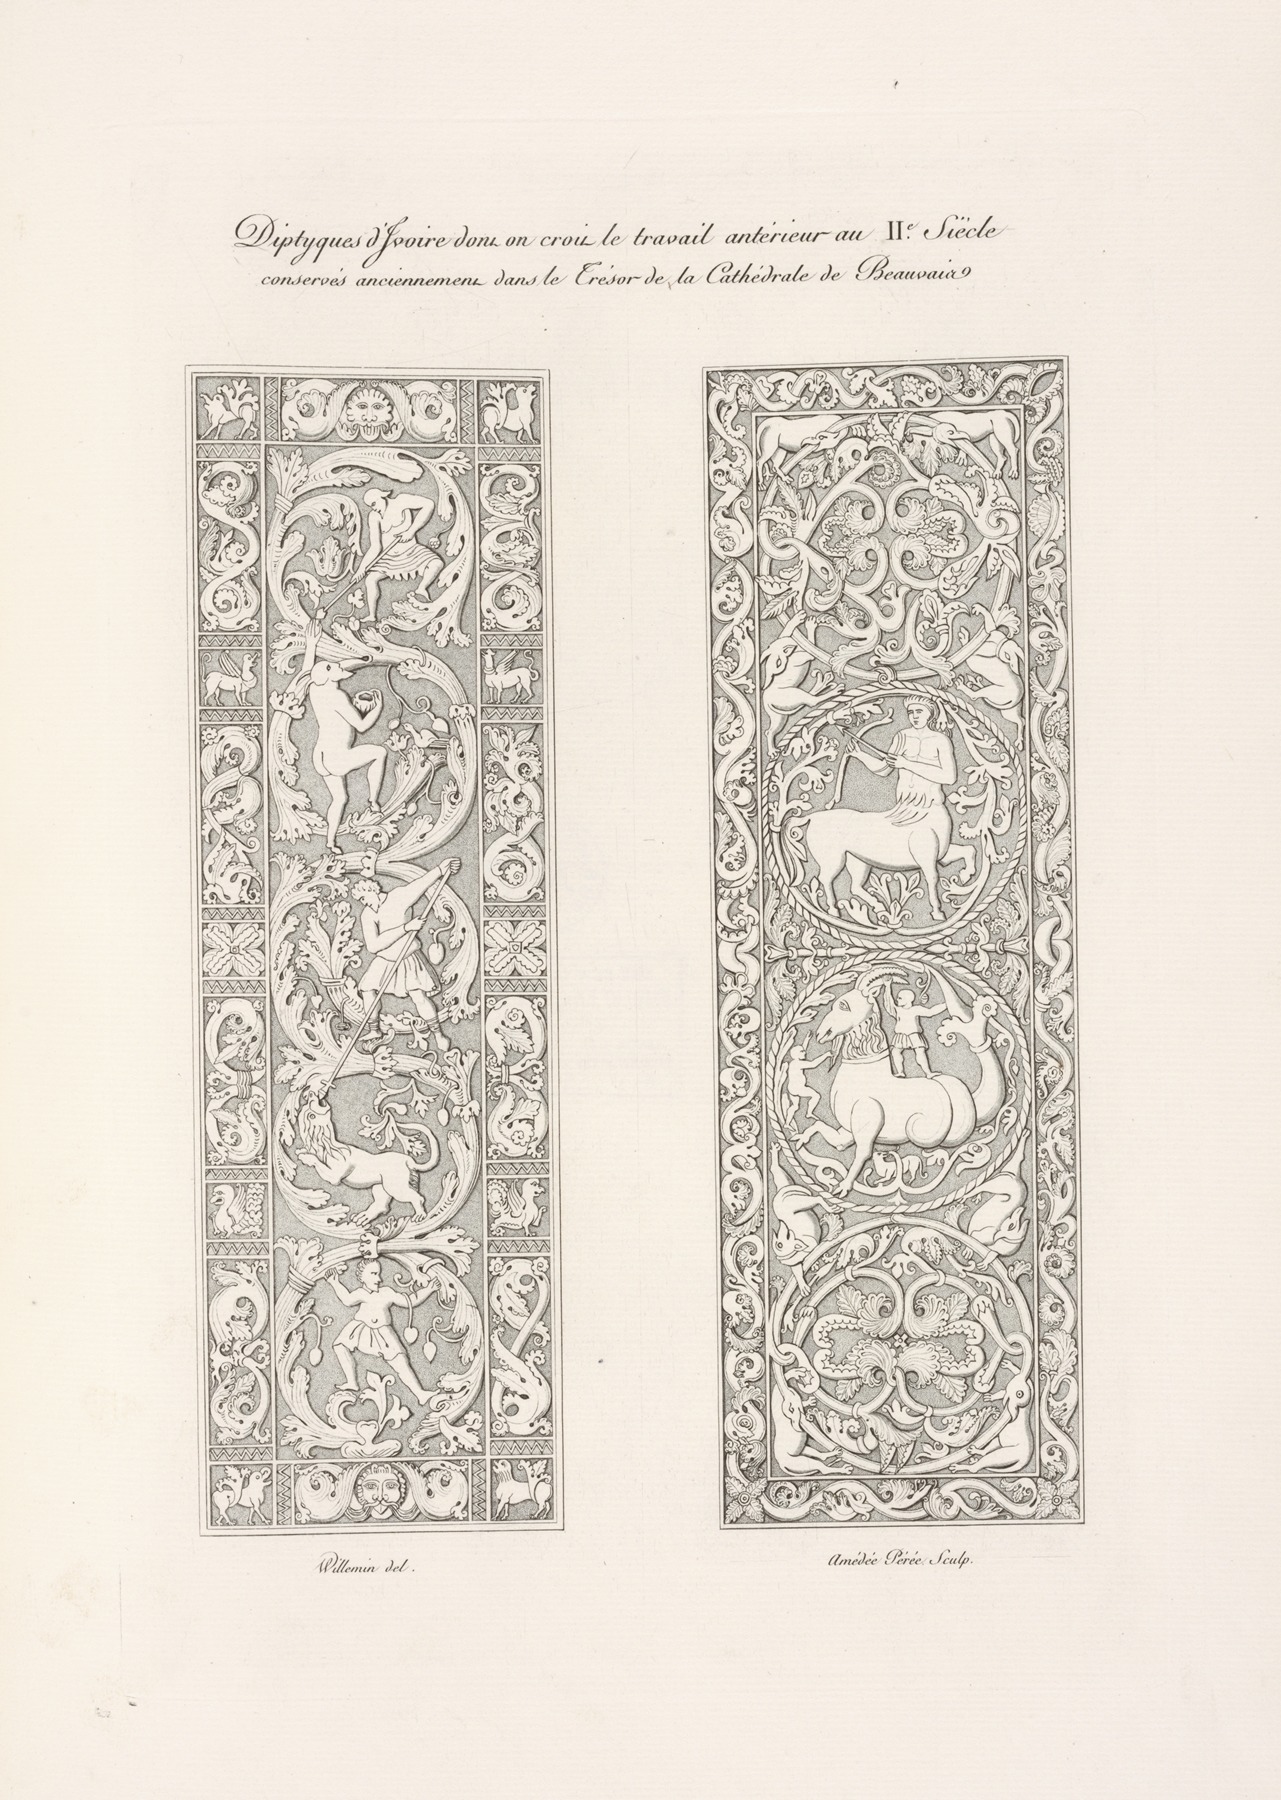 Nicolas Xavier Willemin - Diptyques d’ivoire dont on croit le travail antérieur au IIe. siècle conservés anciennement dan le trésor de la cathédrale de Beauvais